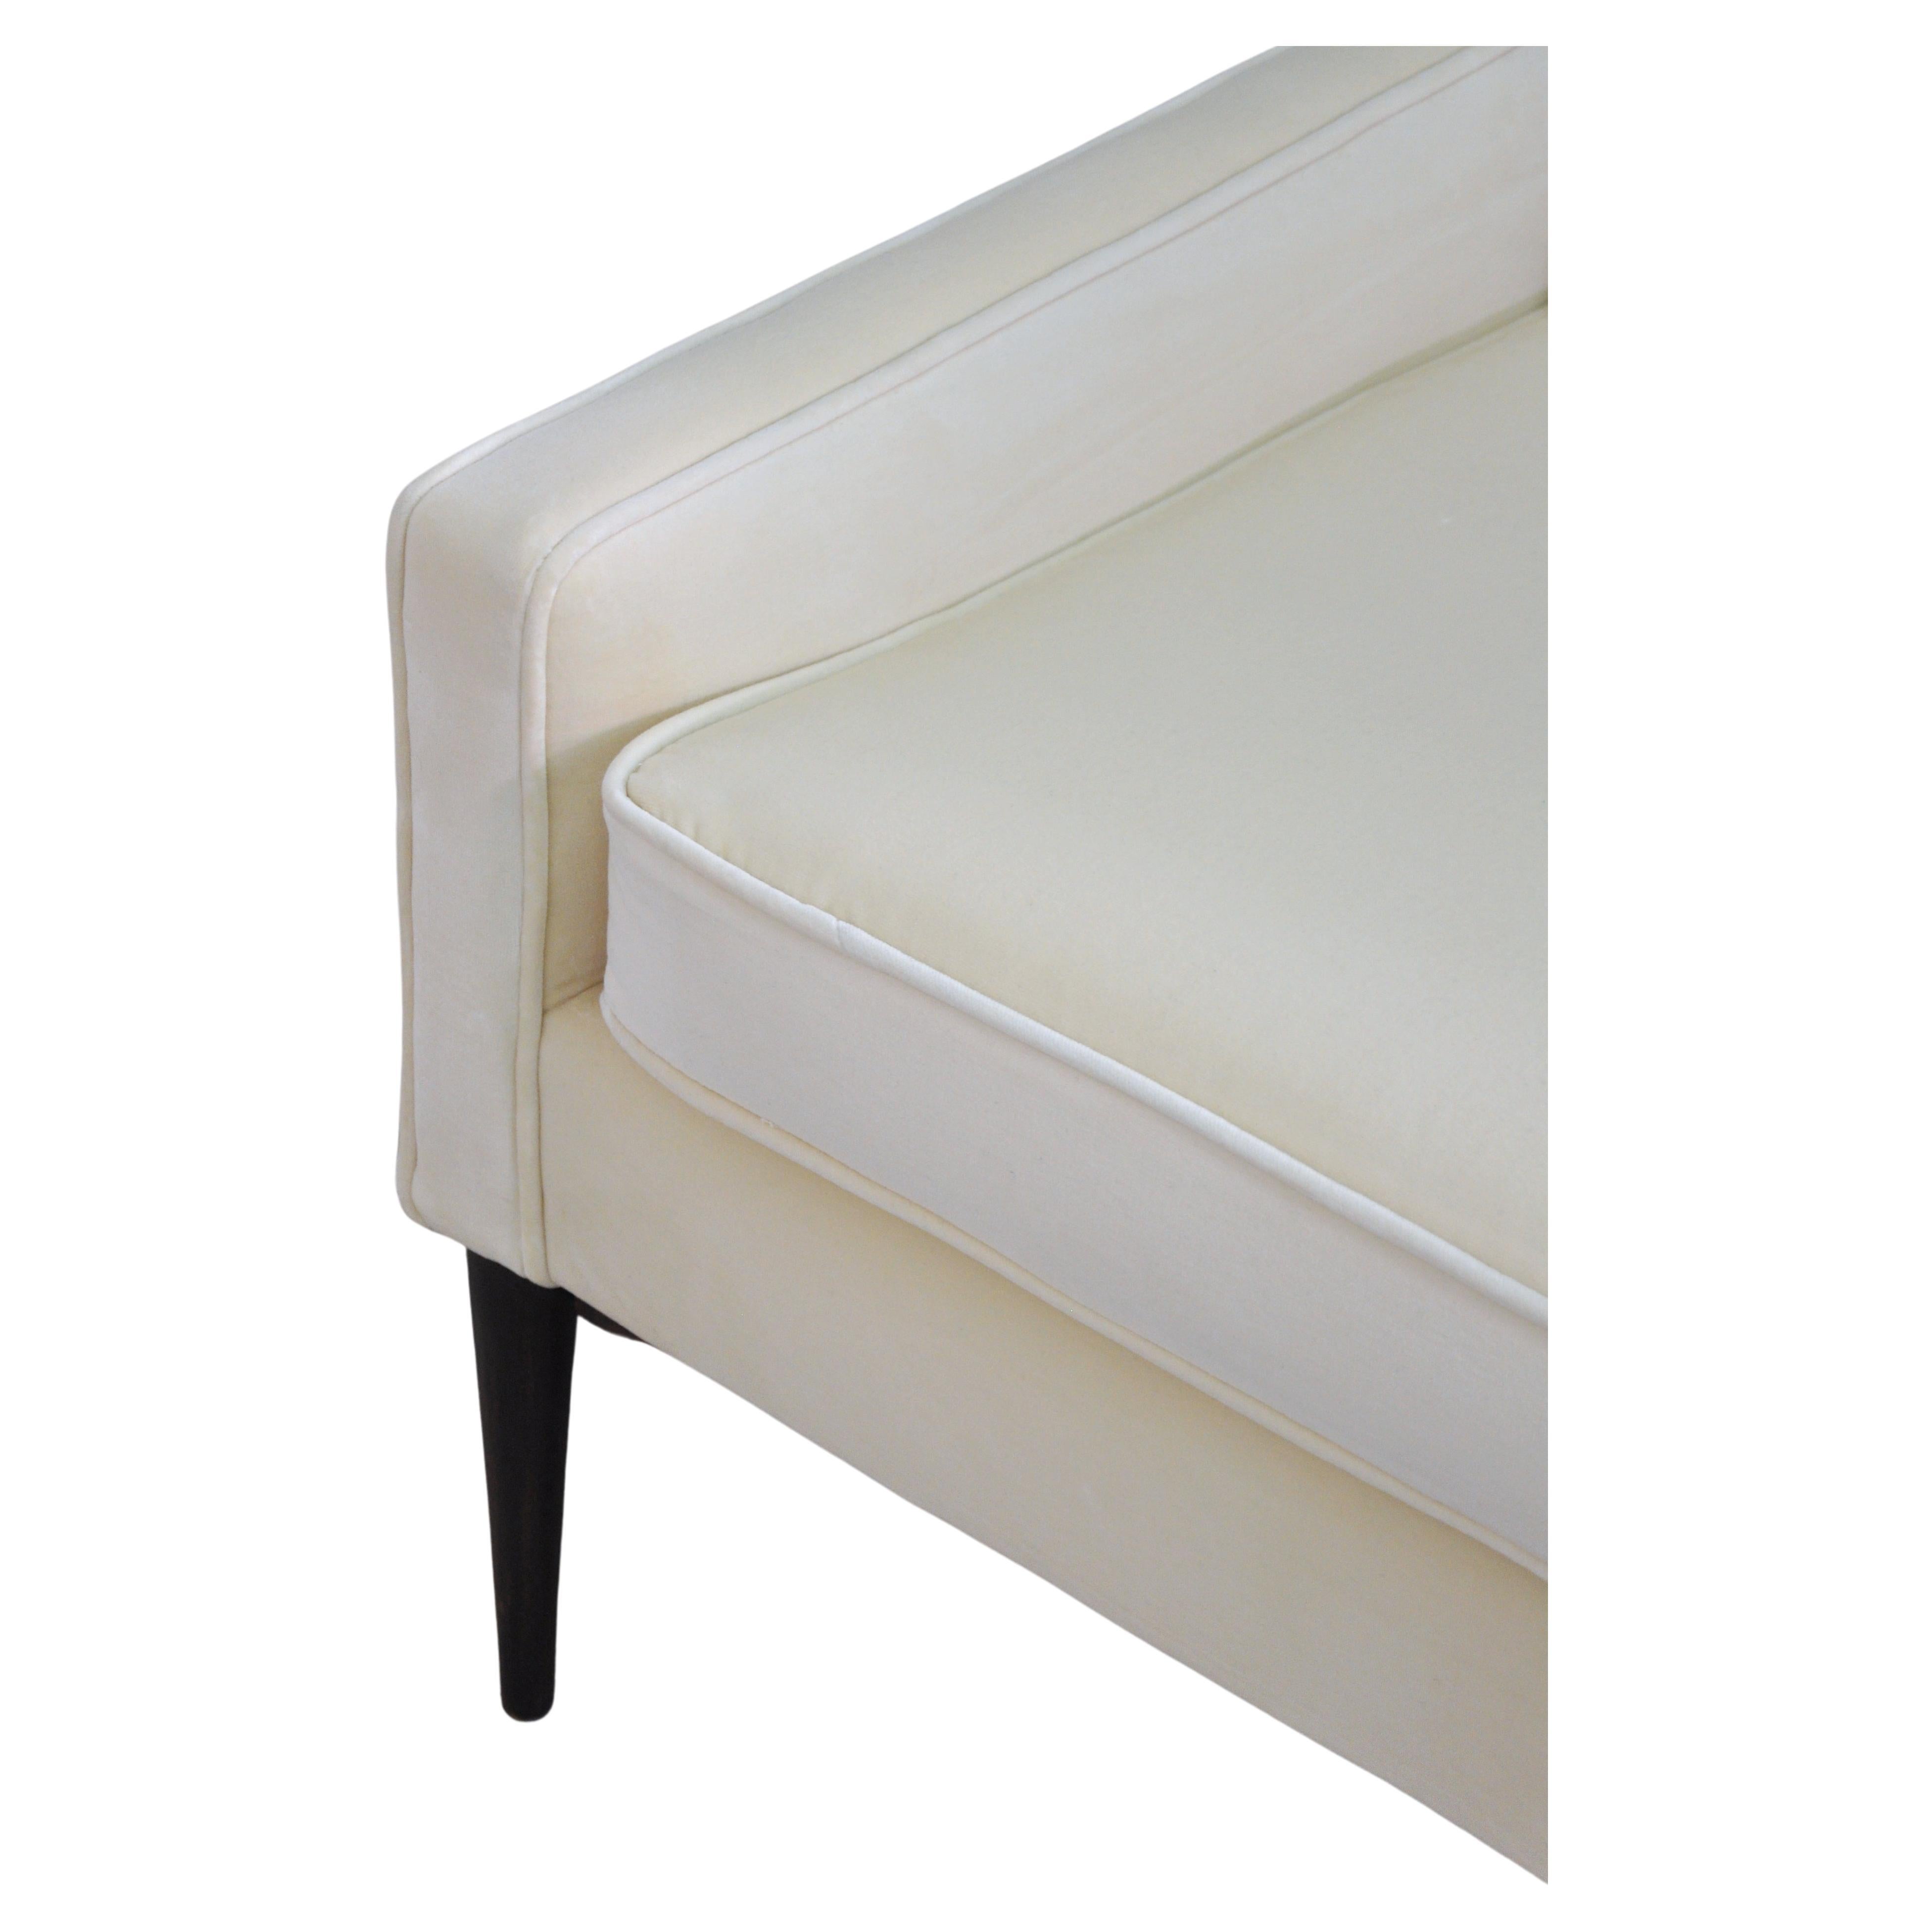 Off-White-Samt-Sofa von Paul McCobb für Directional, 1950er Jahre (20. Jahrhundert) im Angebot